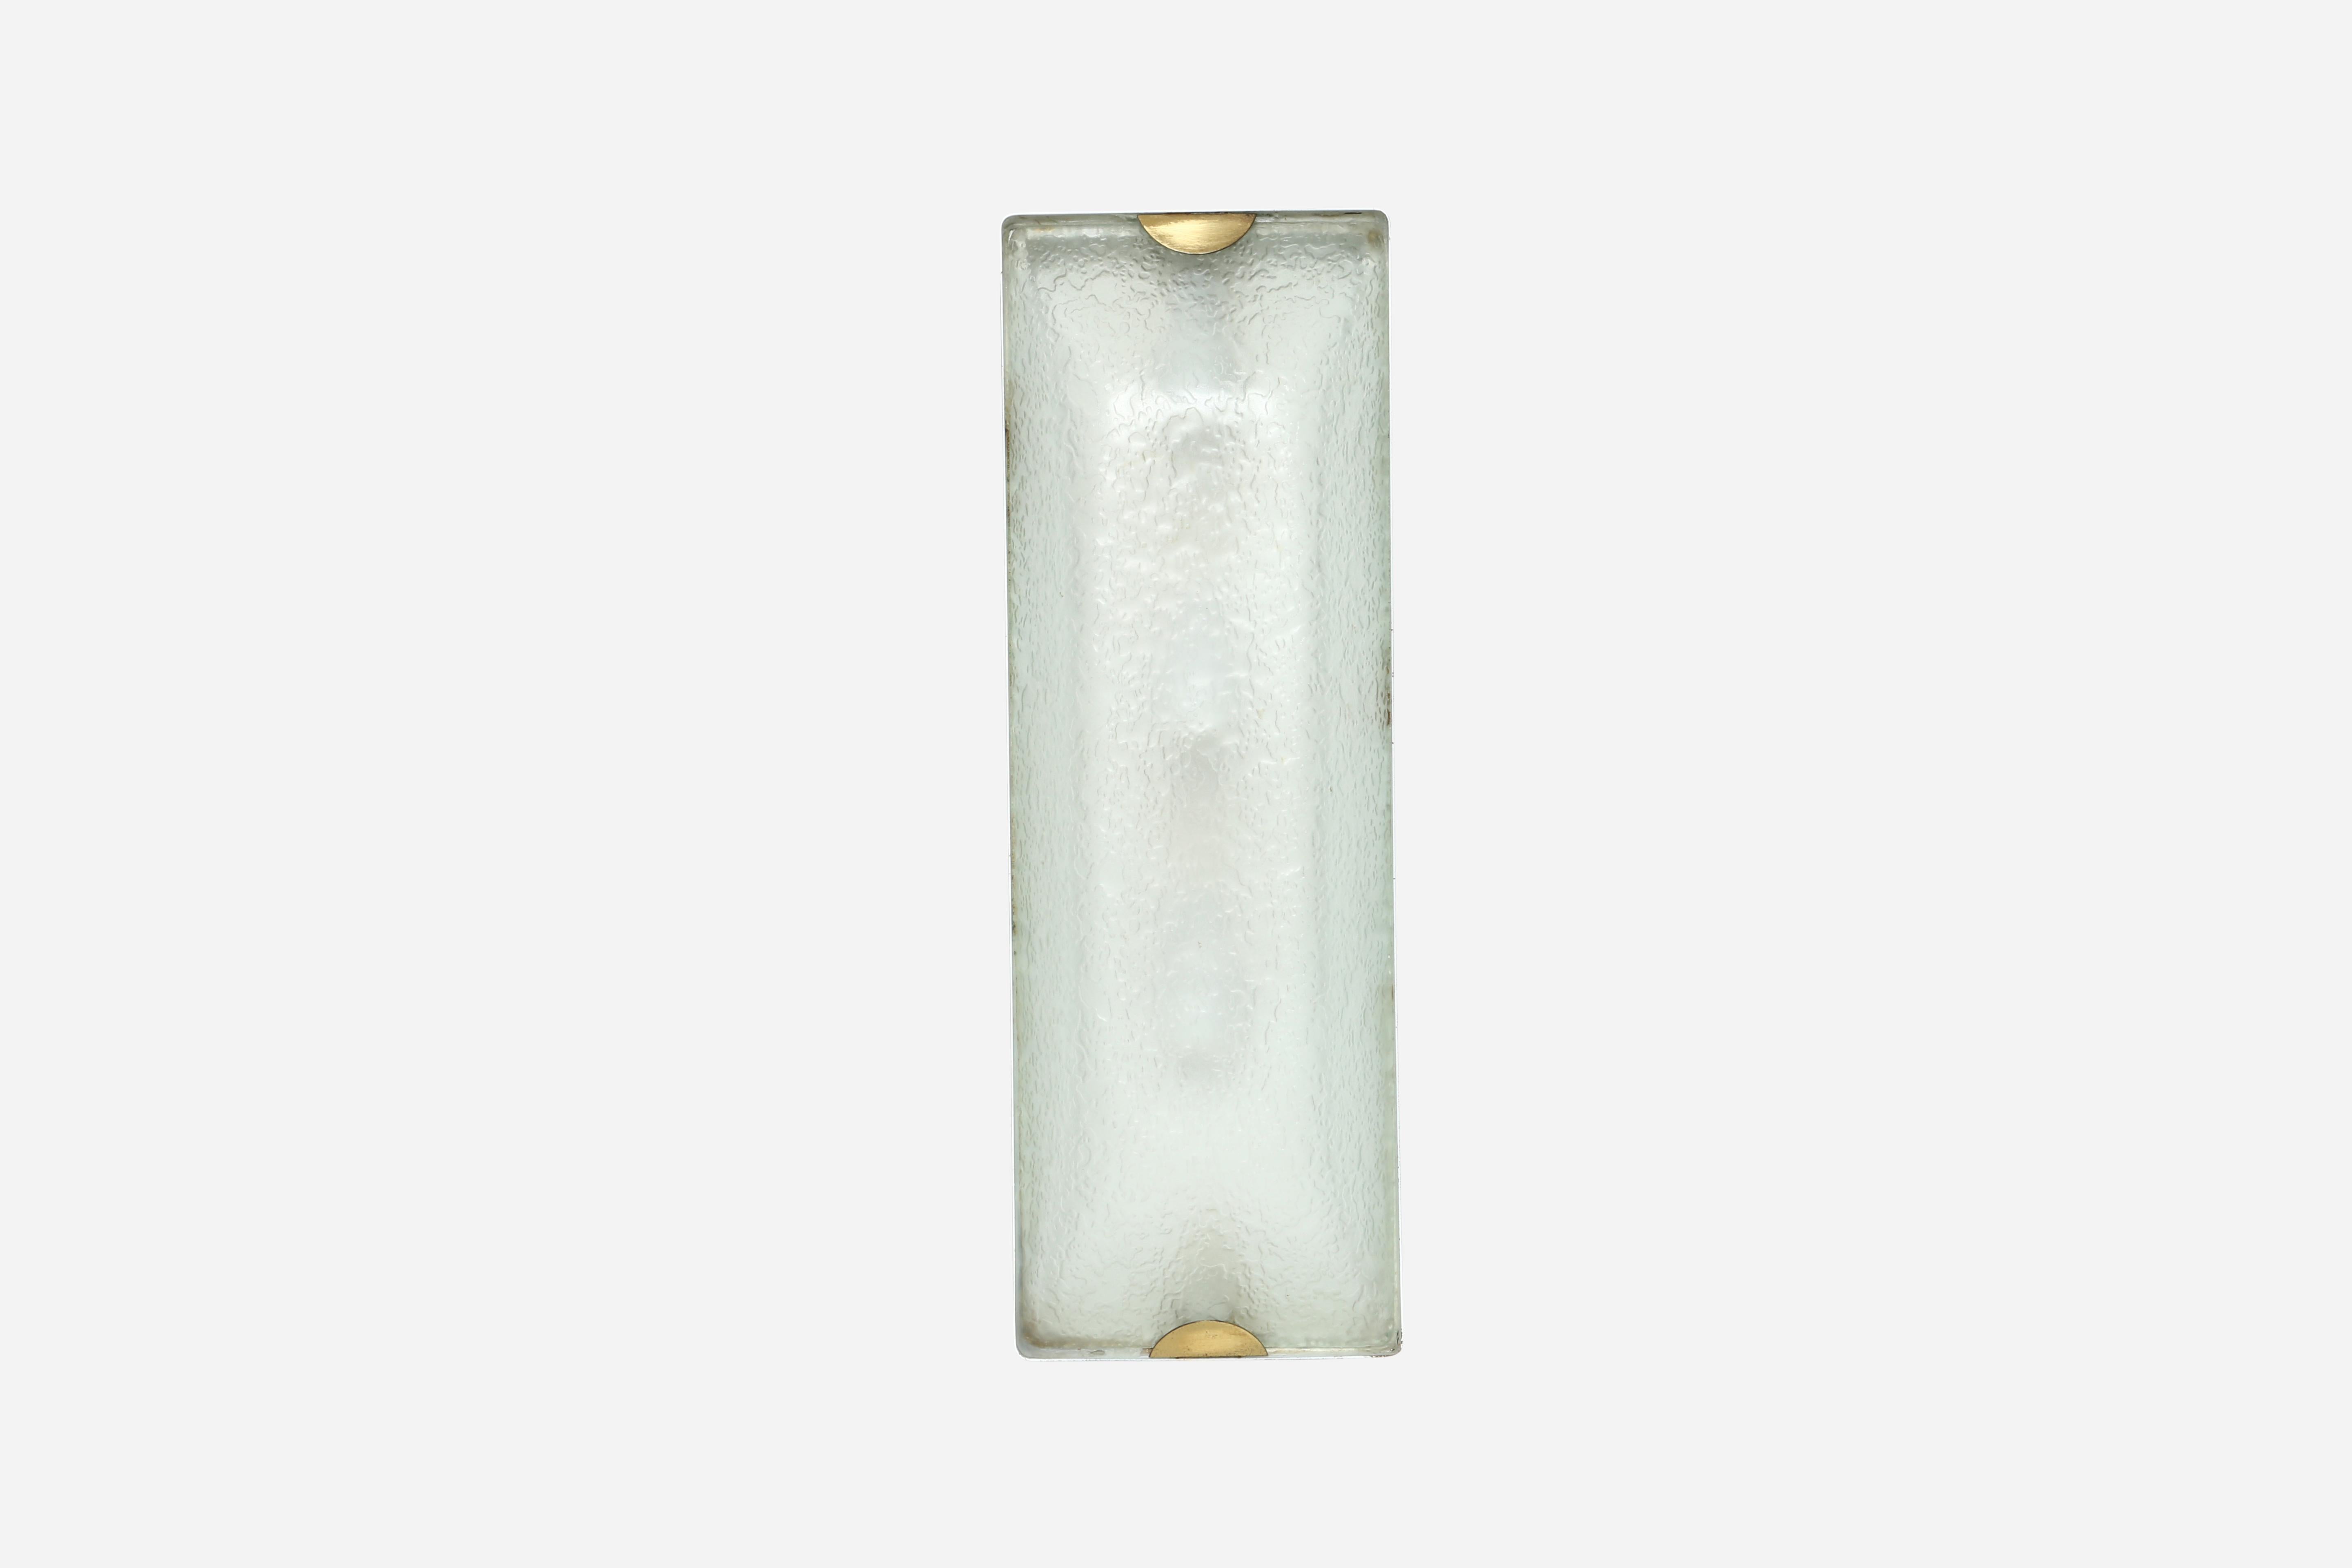 Fontana Arte rechteckige Decken- oder Wandleuchte zur flachen Montage.
Italien 1960er Jahre.
Strukturiertes Glas, Messing, Metall.
Rewired for US. 
Für 3 Kandelaber-Glühbirnen geeignet.

